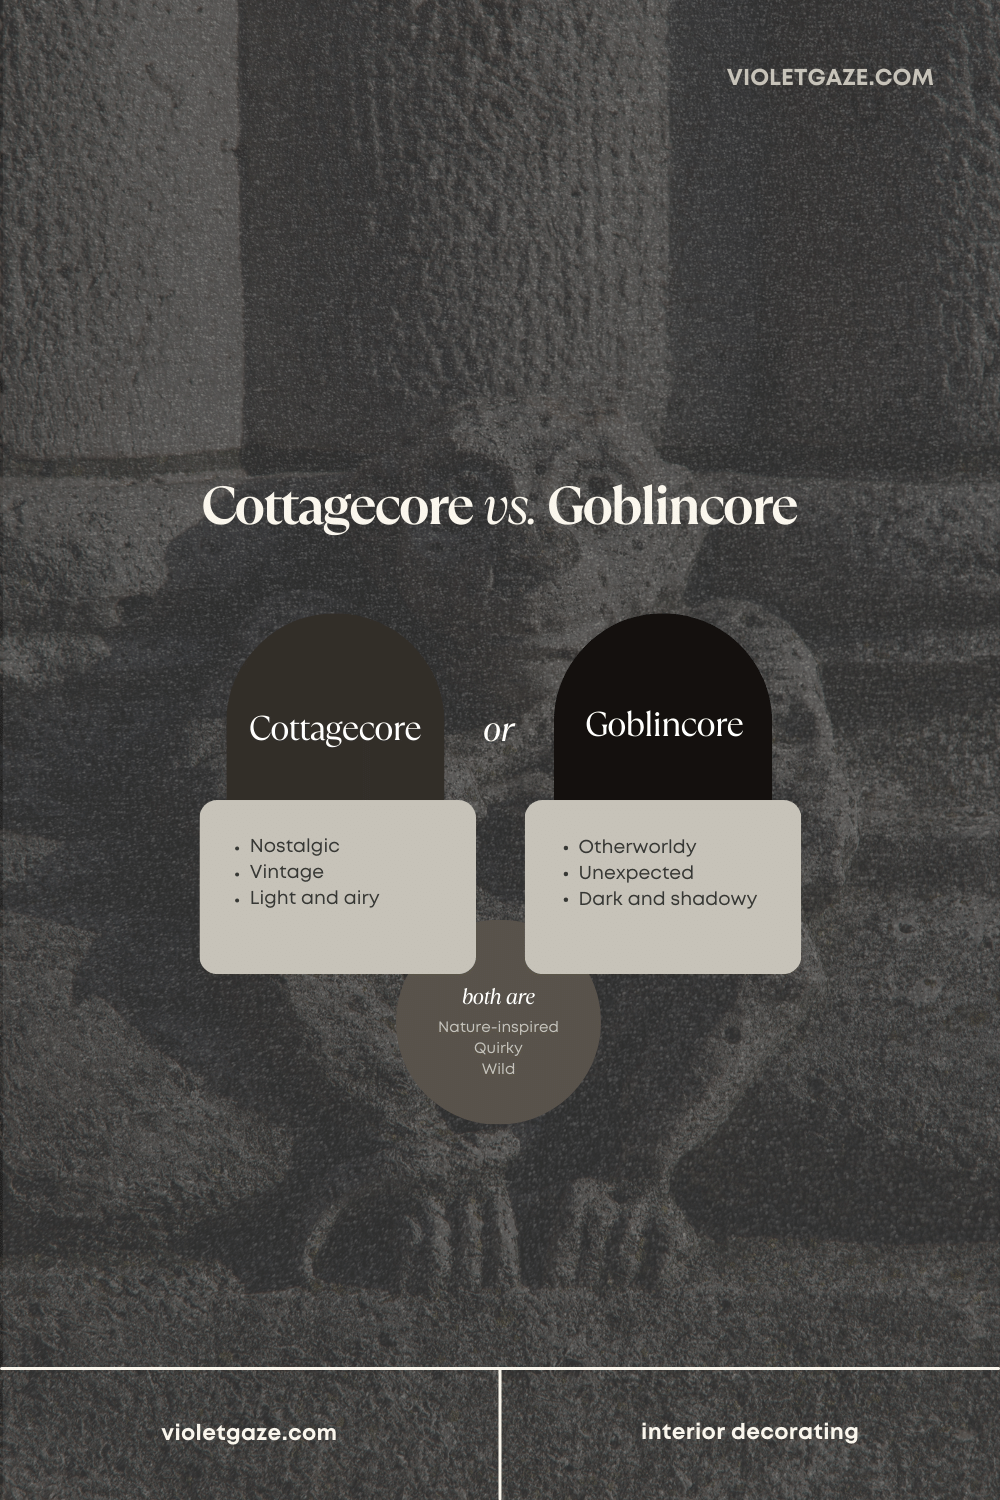 cottagecore vs. goblincore comparison
